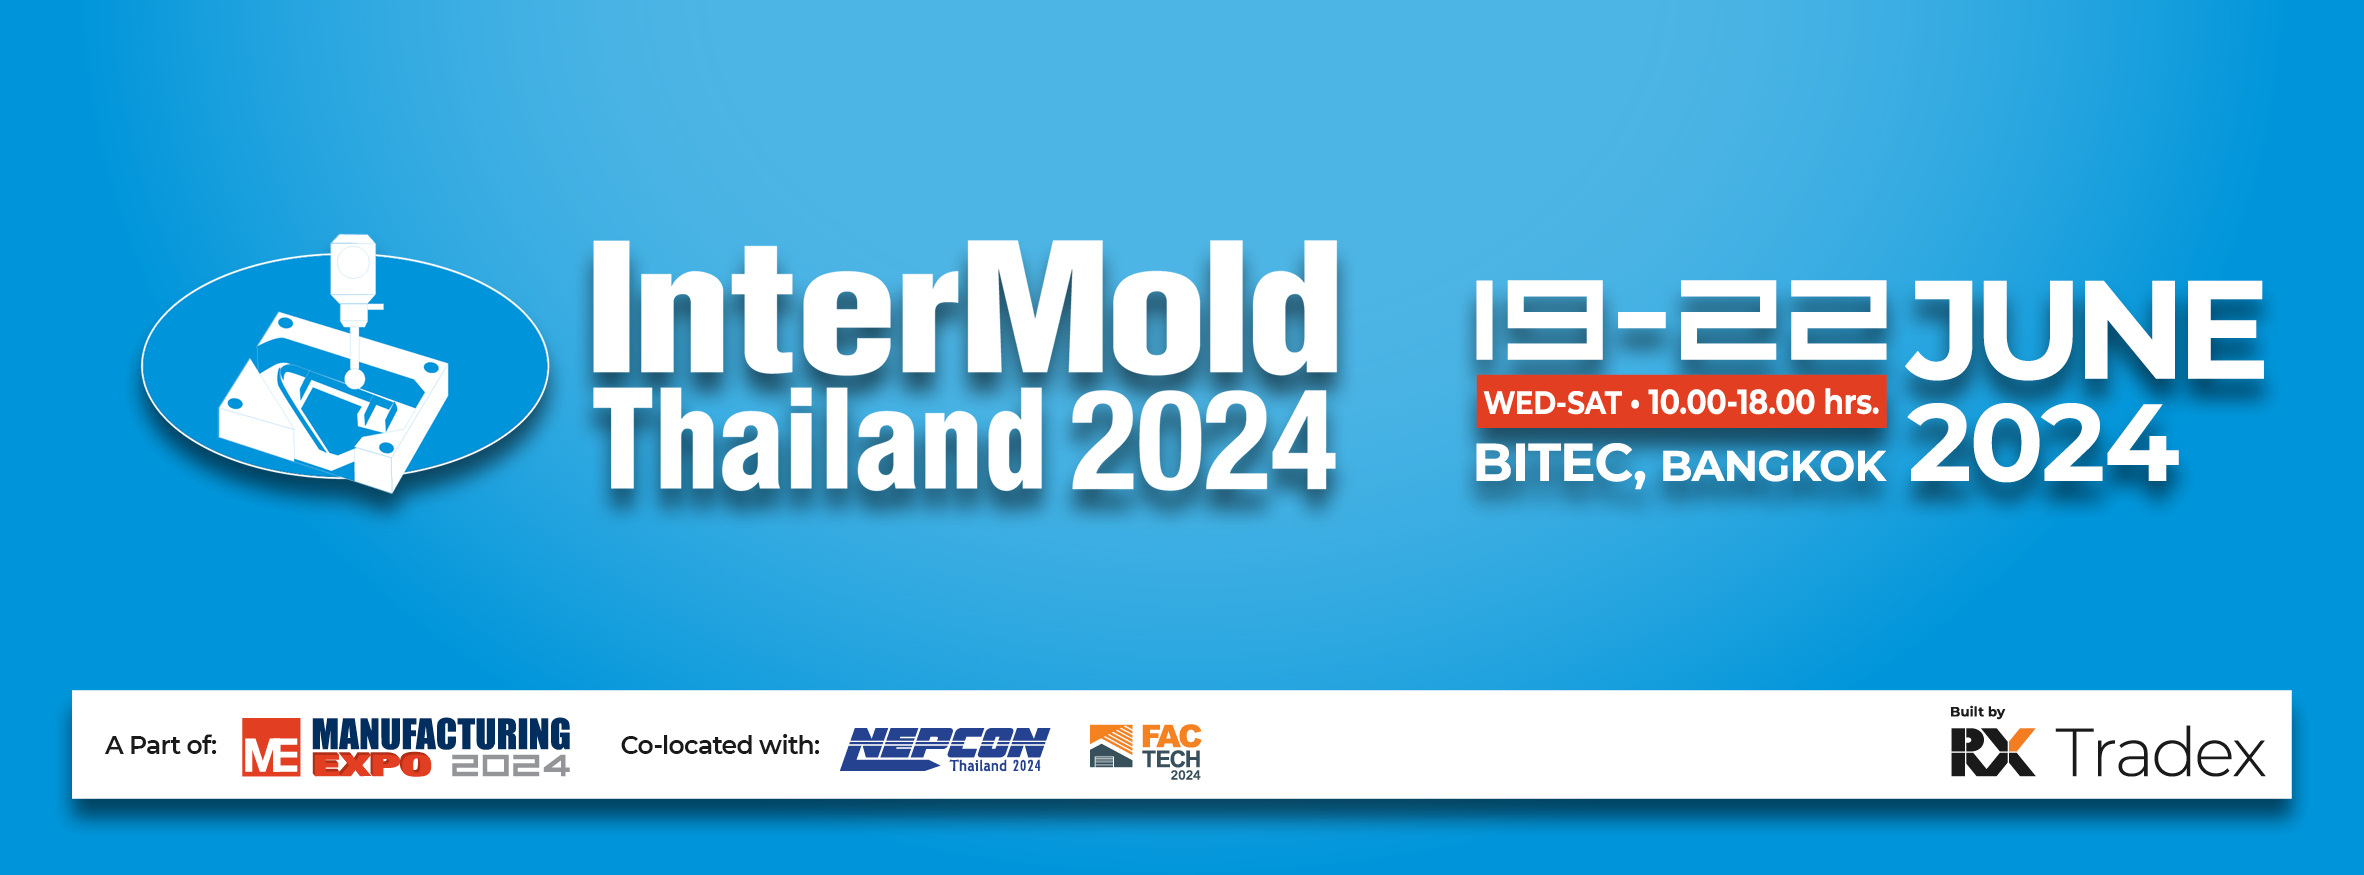 InterMold Thailand 2024, Bangkok, Thailand